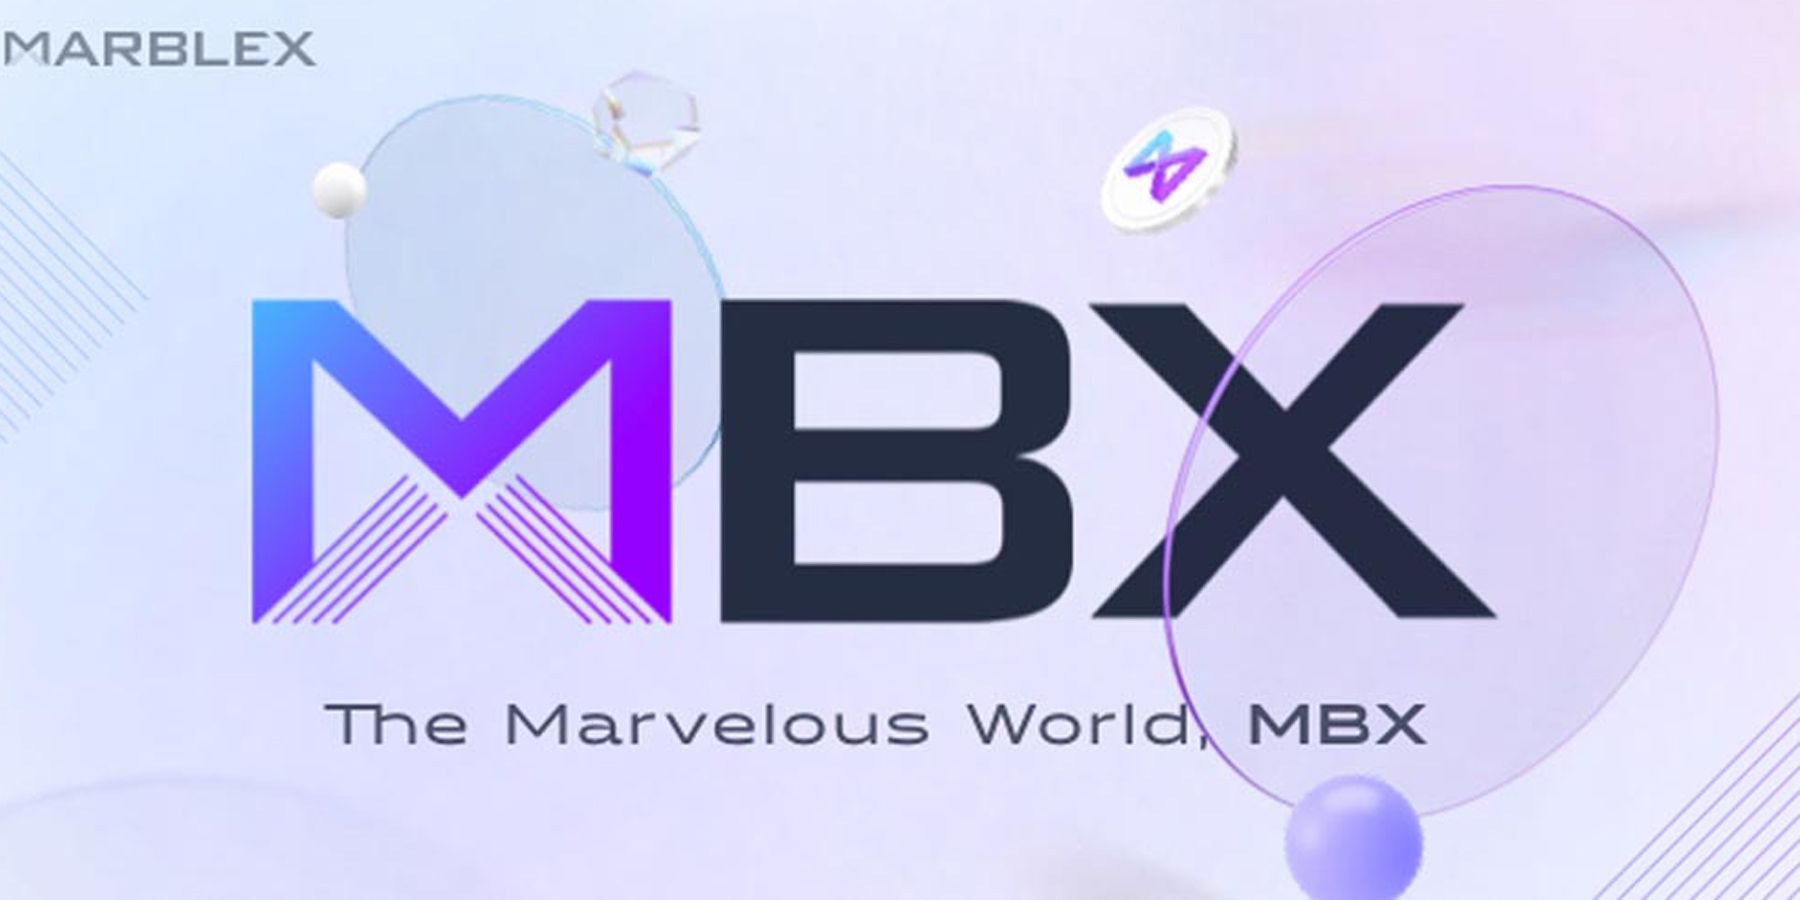 The MarbleX blockchain